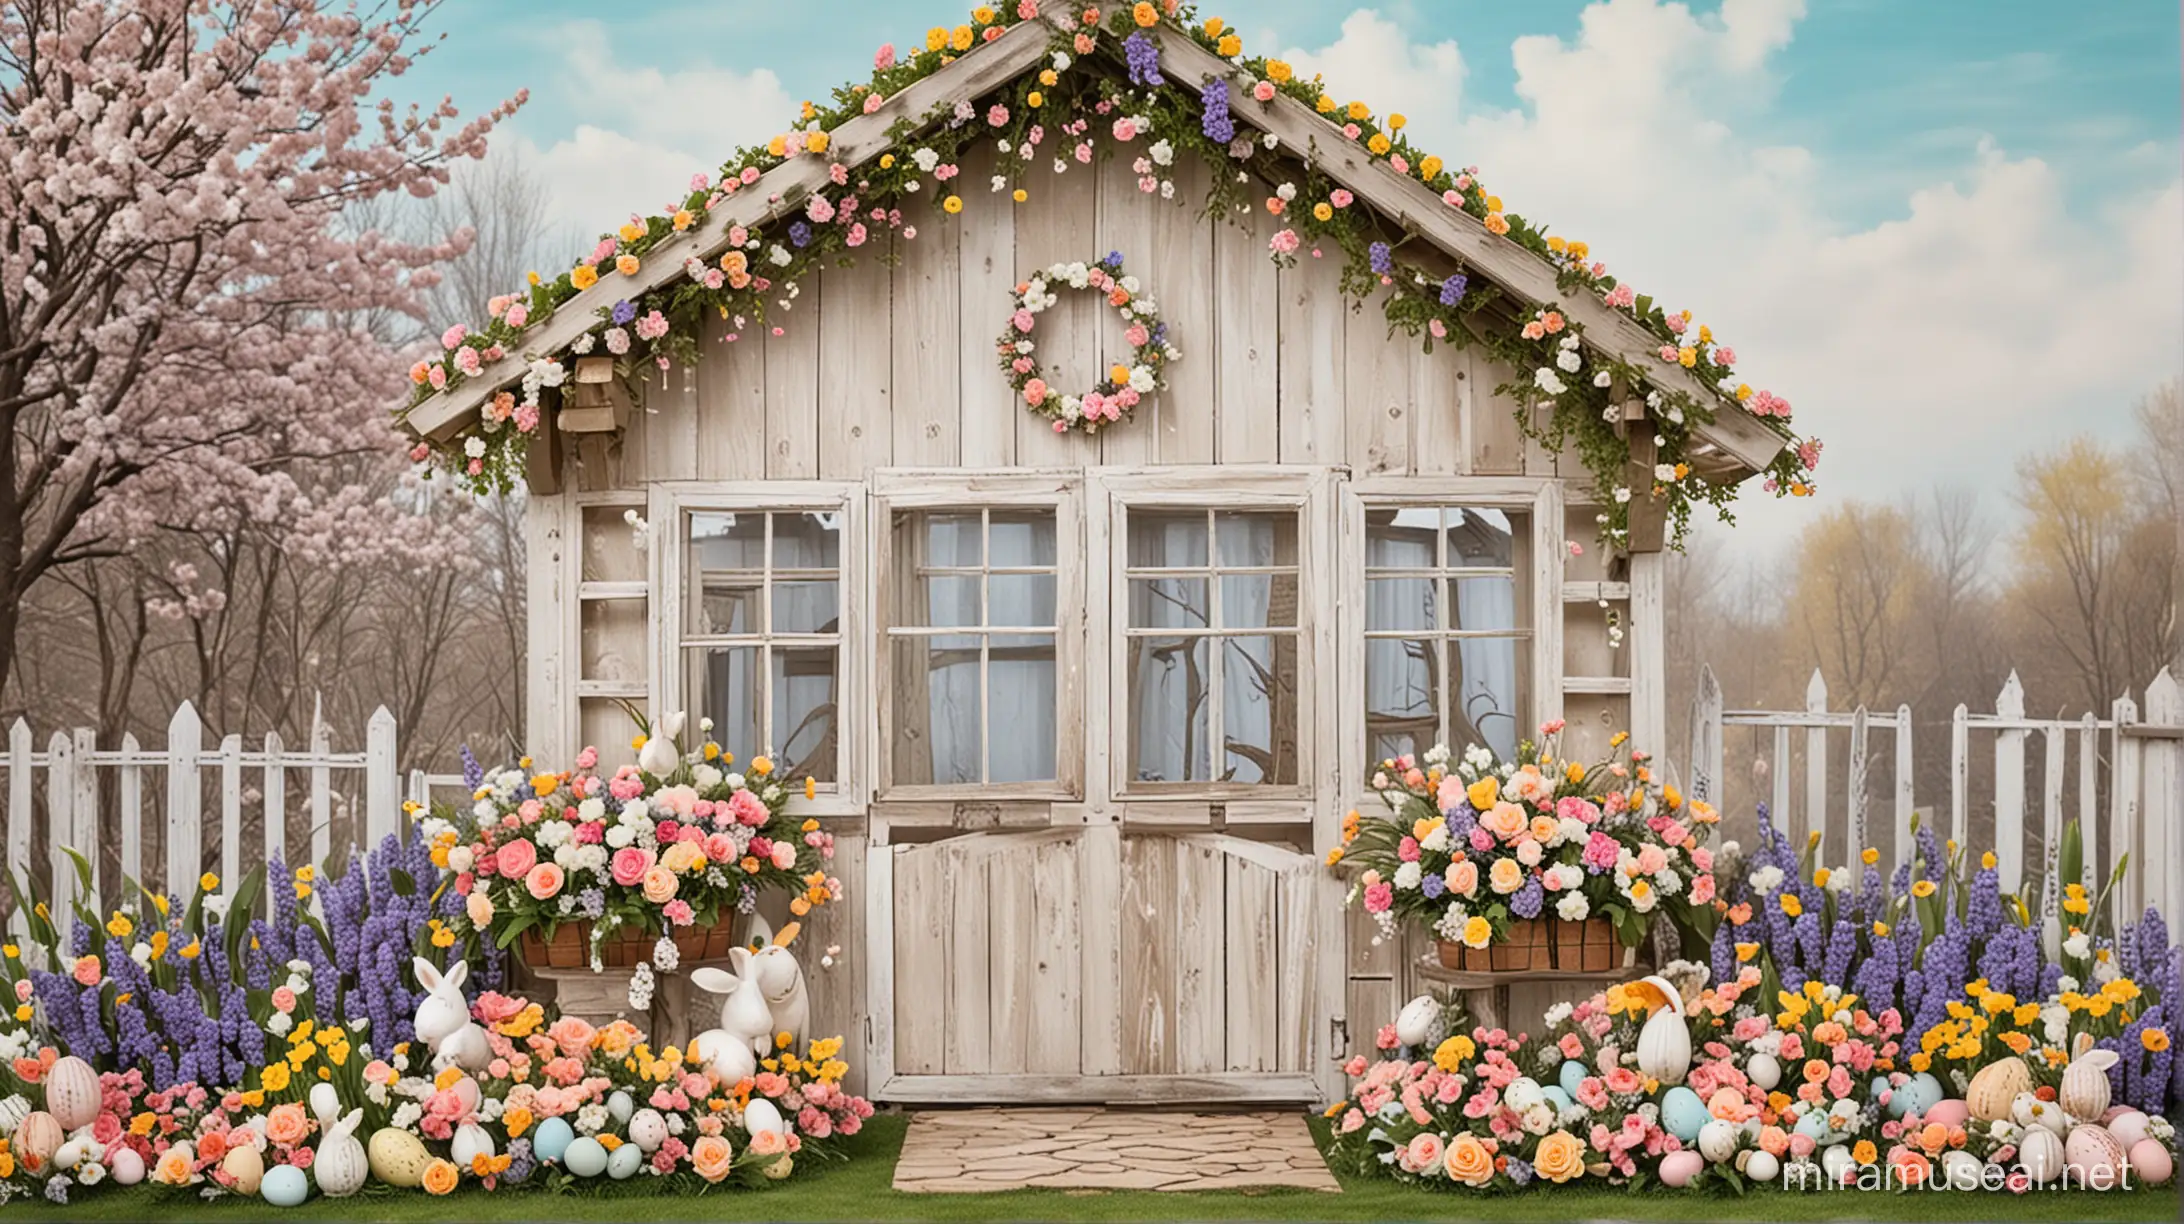 SpringEaster Backdrop Flower House Designed